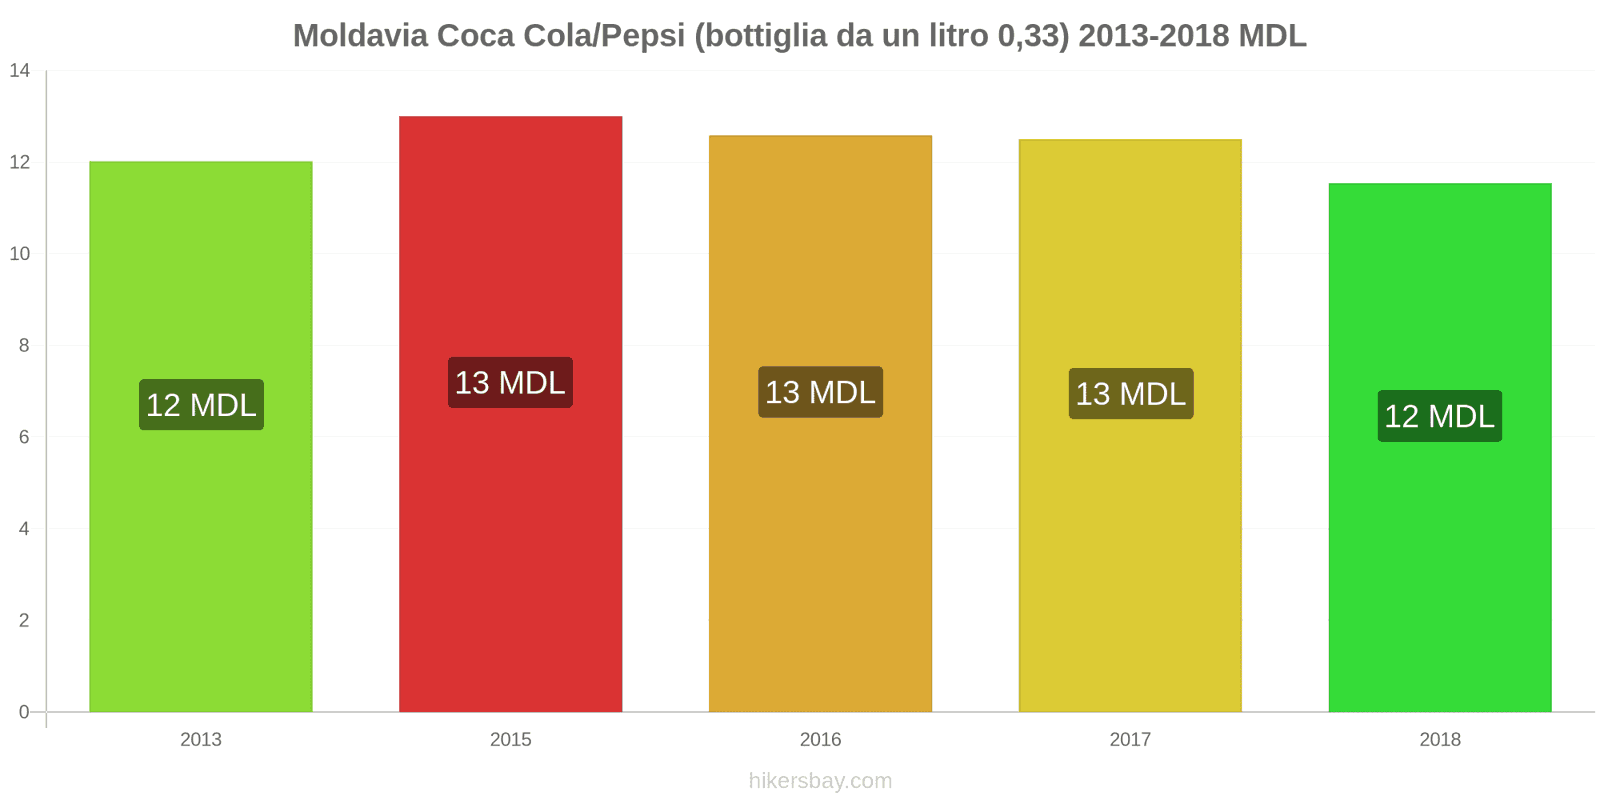 Moldavia cambi di prezzo Coca-Cola/Pepsi (bottiglia da 0.33 litri) hikersbay.com